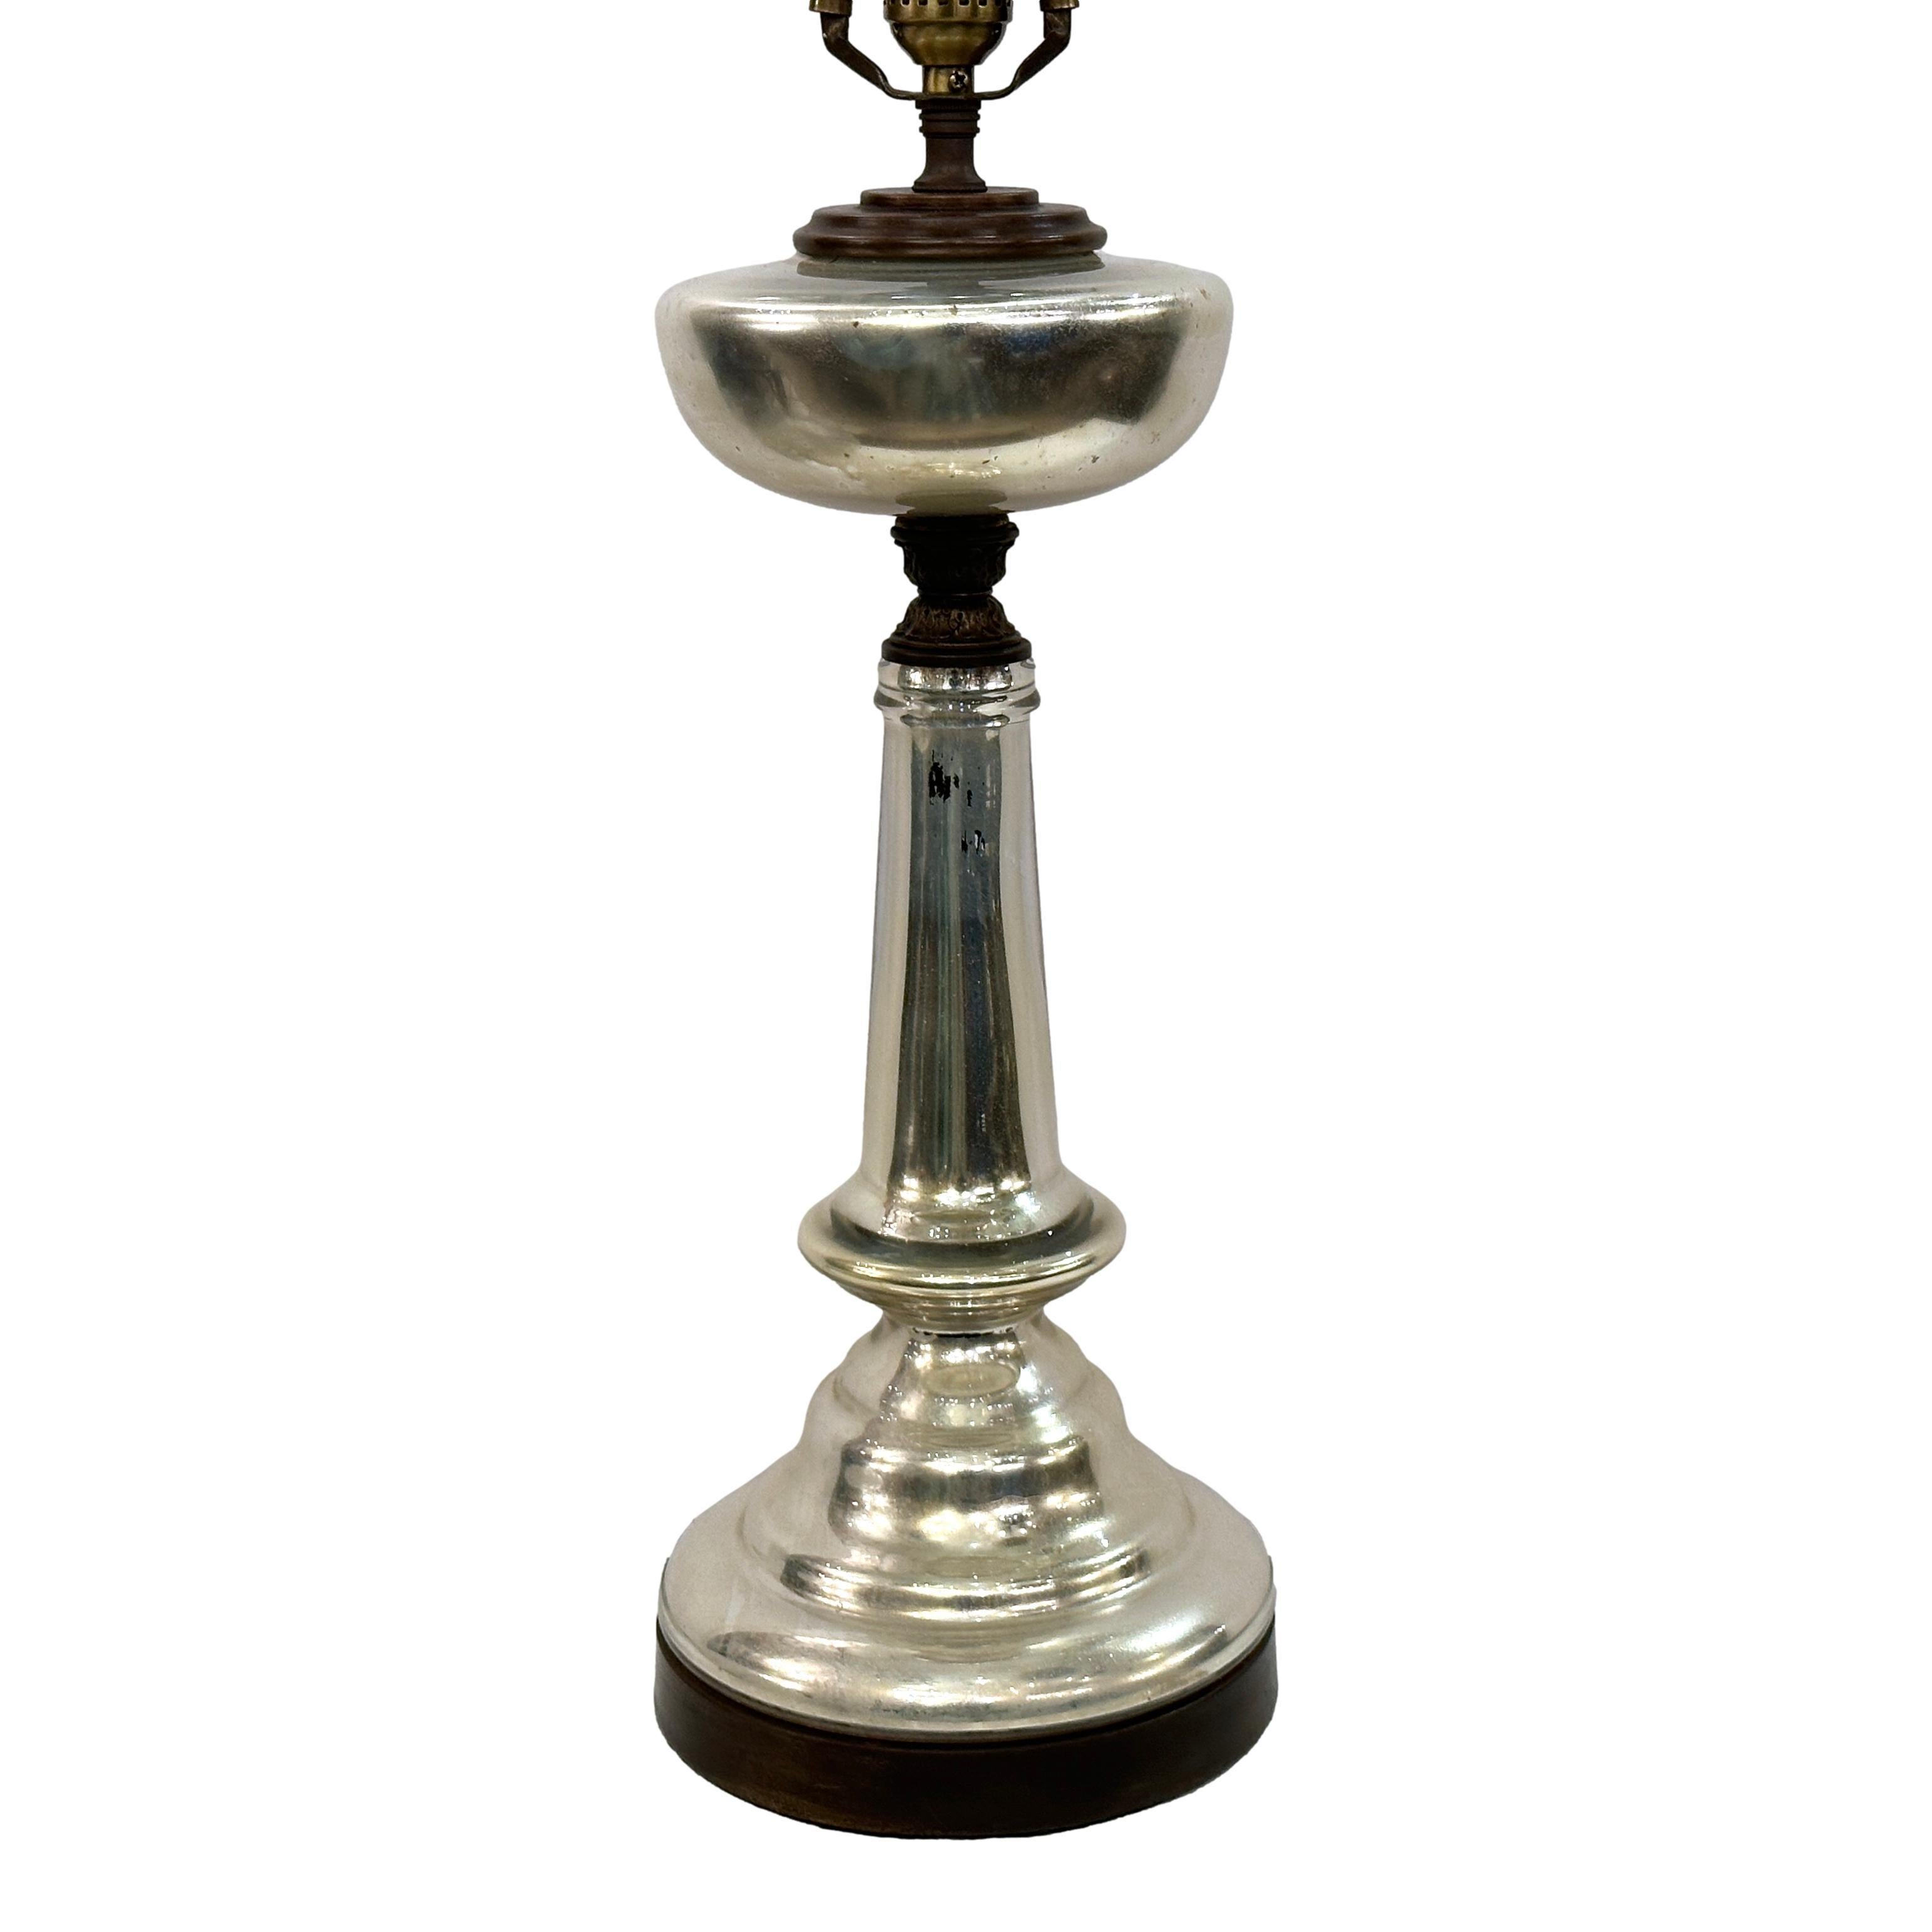 Lampe de table anglaise en verre au mercure datant des années 1920.

Mesures :
Hauteur du corps : 19
Hauteur jusqu'à l'appui de l'abat-jour : 28